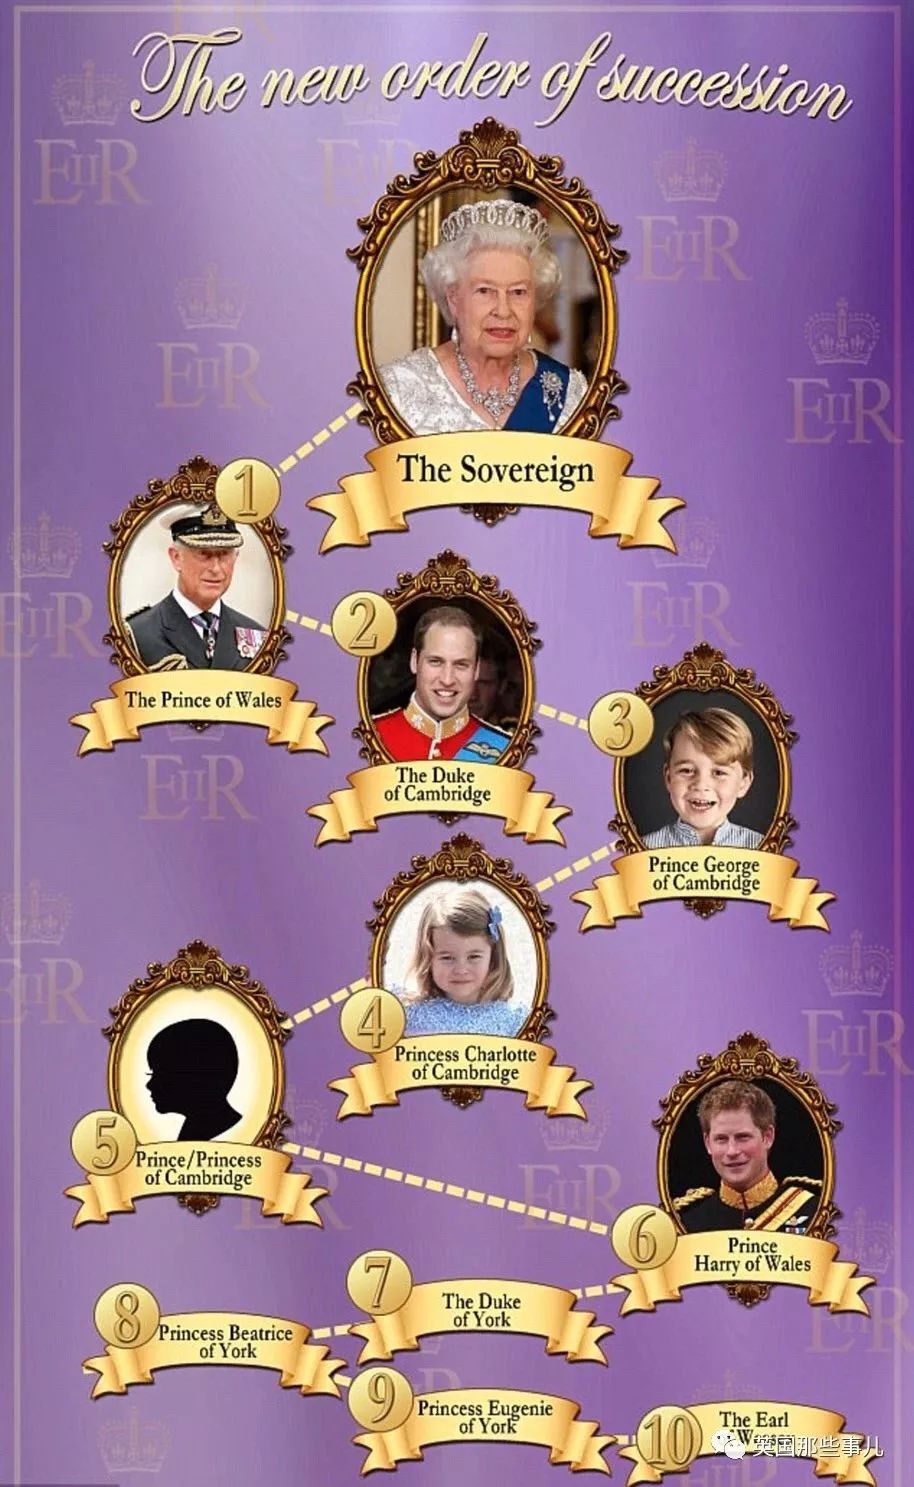 哈利王子顺位又往后?英国王室新迎第五顺位继承人